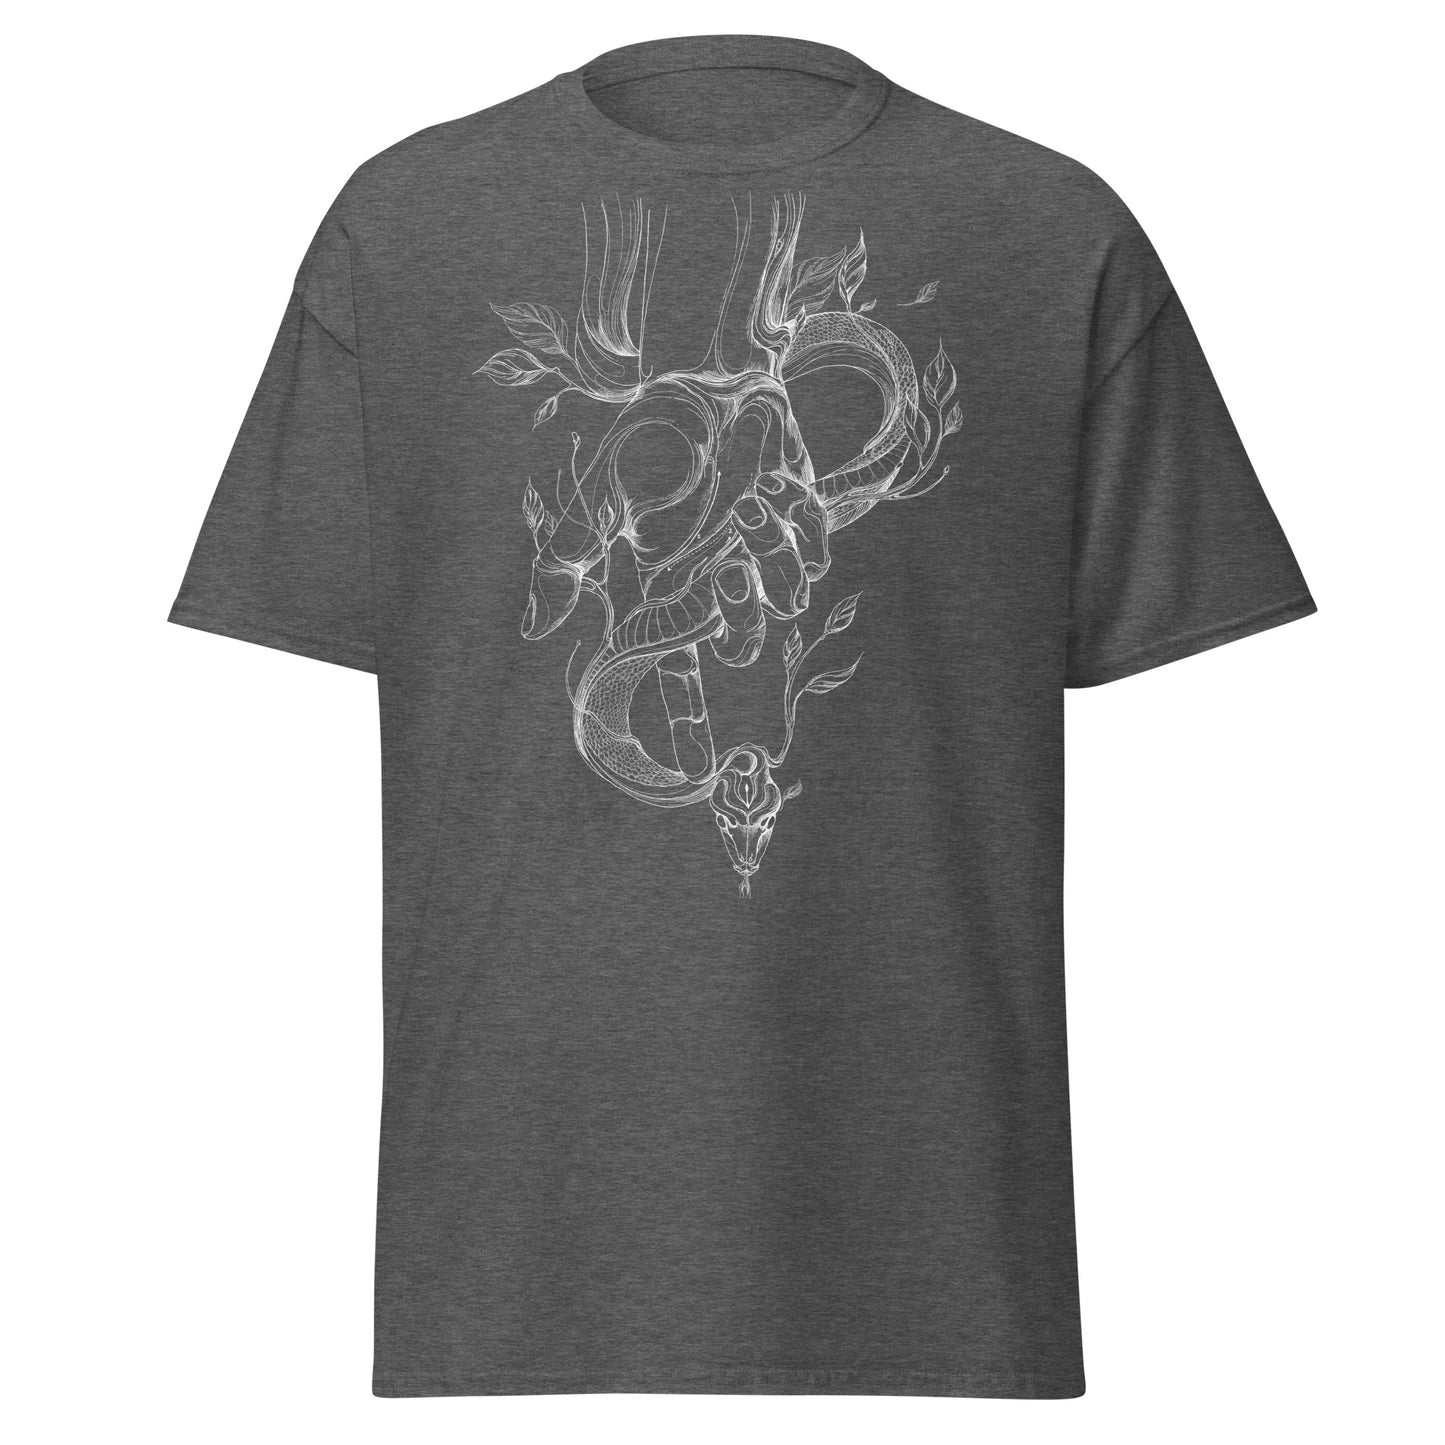 The Dreamers T-shirt: Prometheus